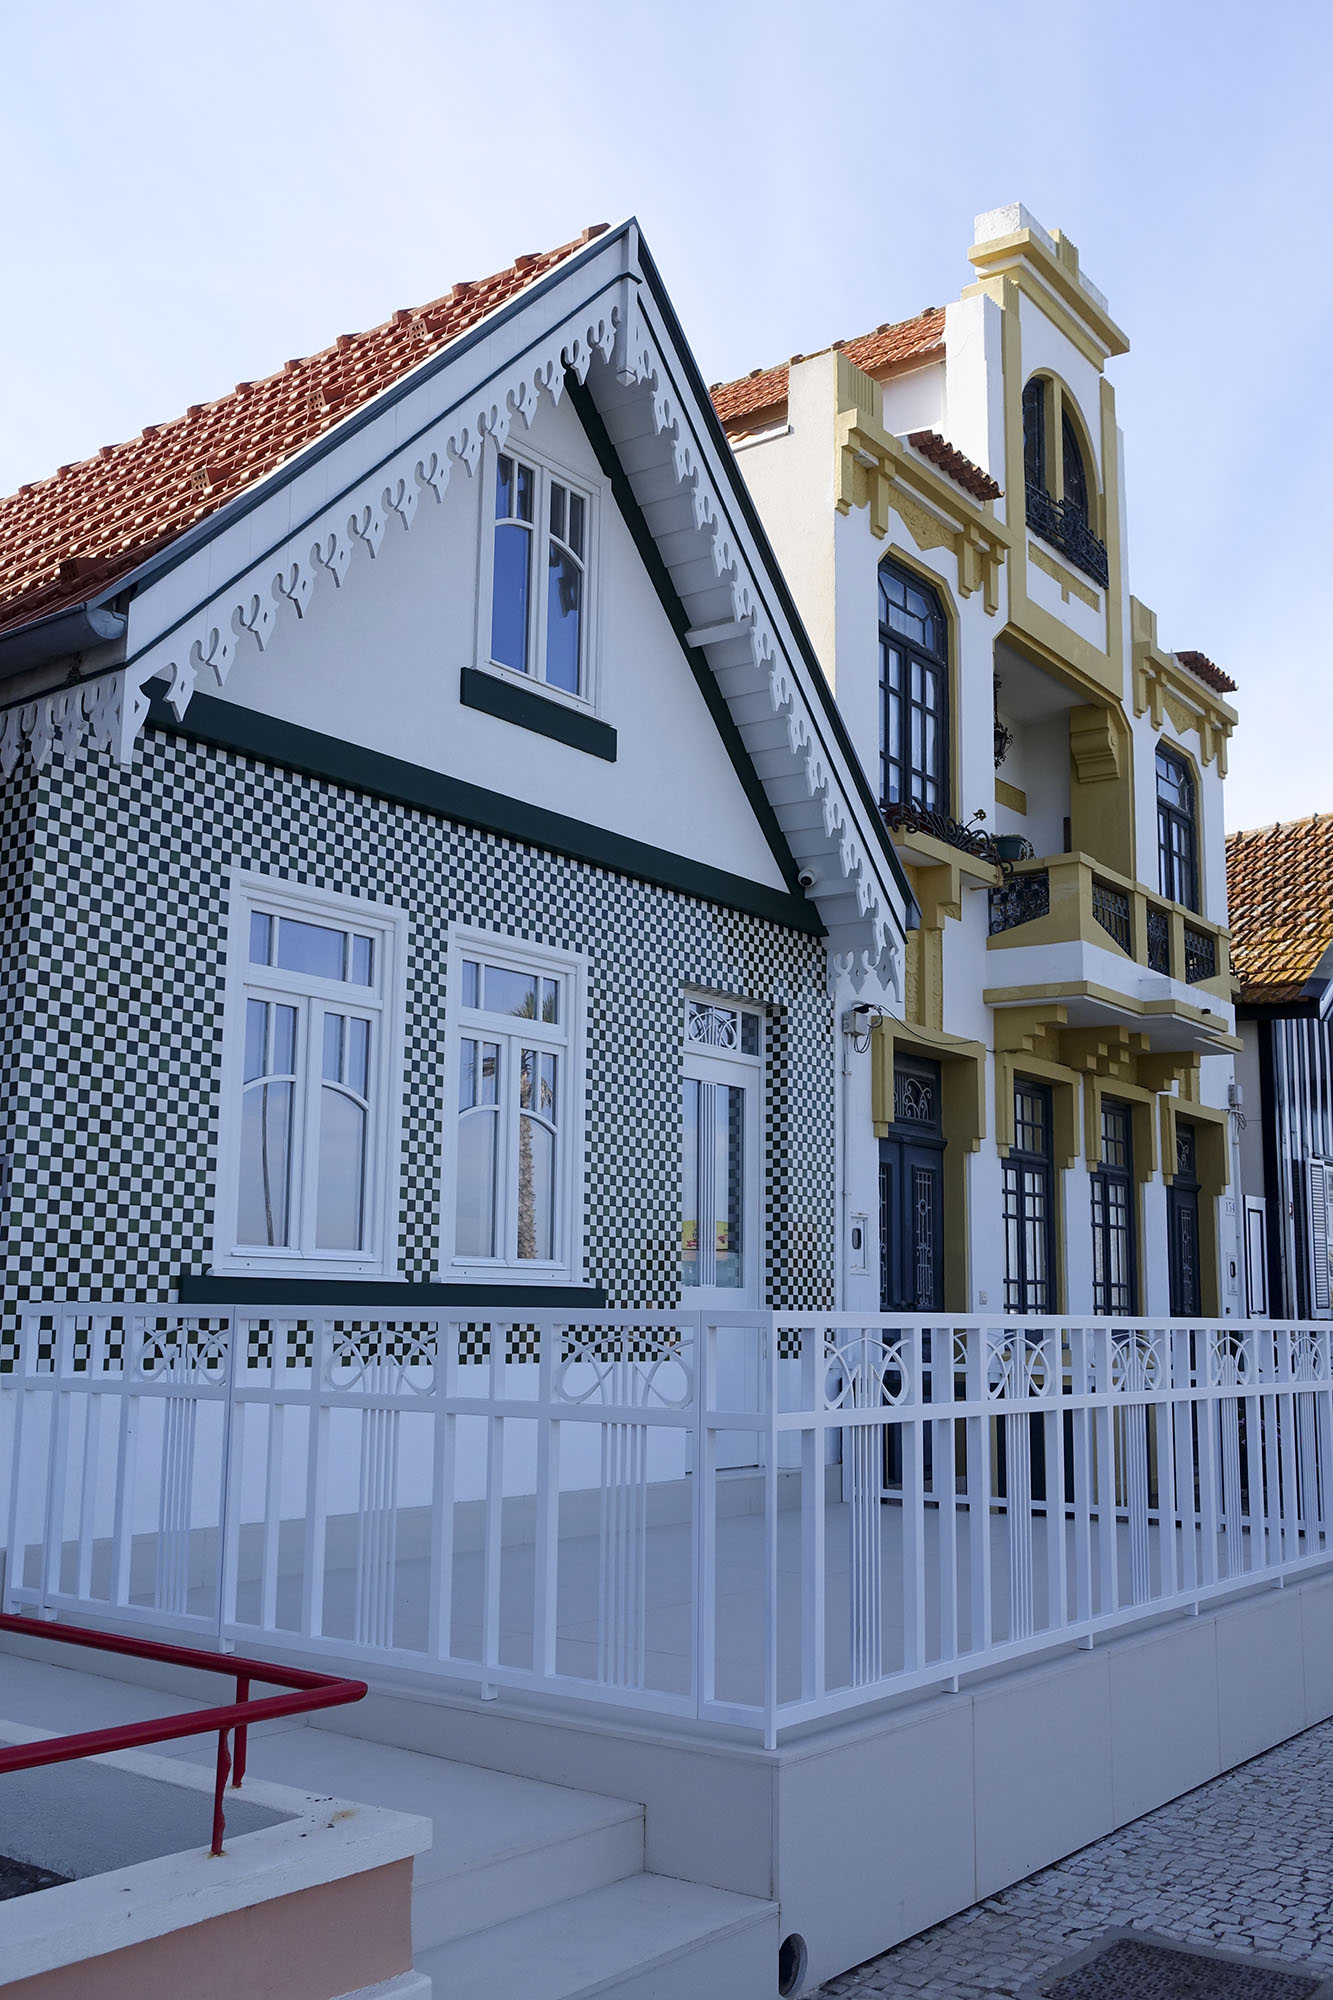 costa nova beach aveiro portugal coast stripe house